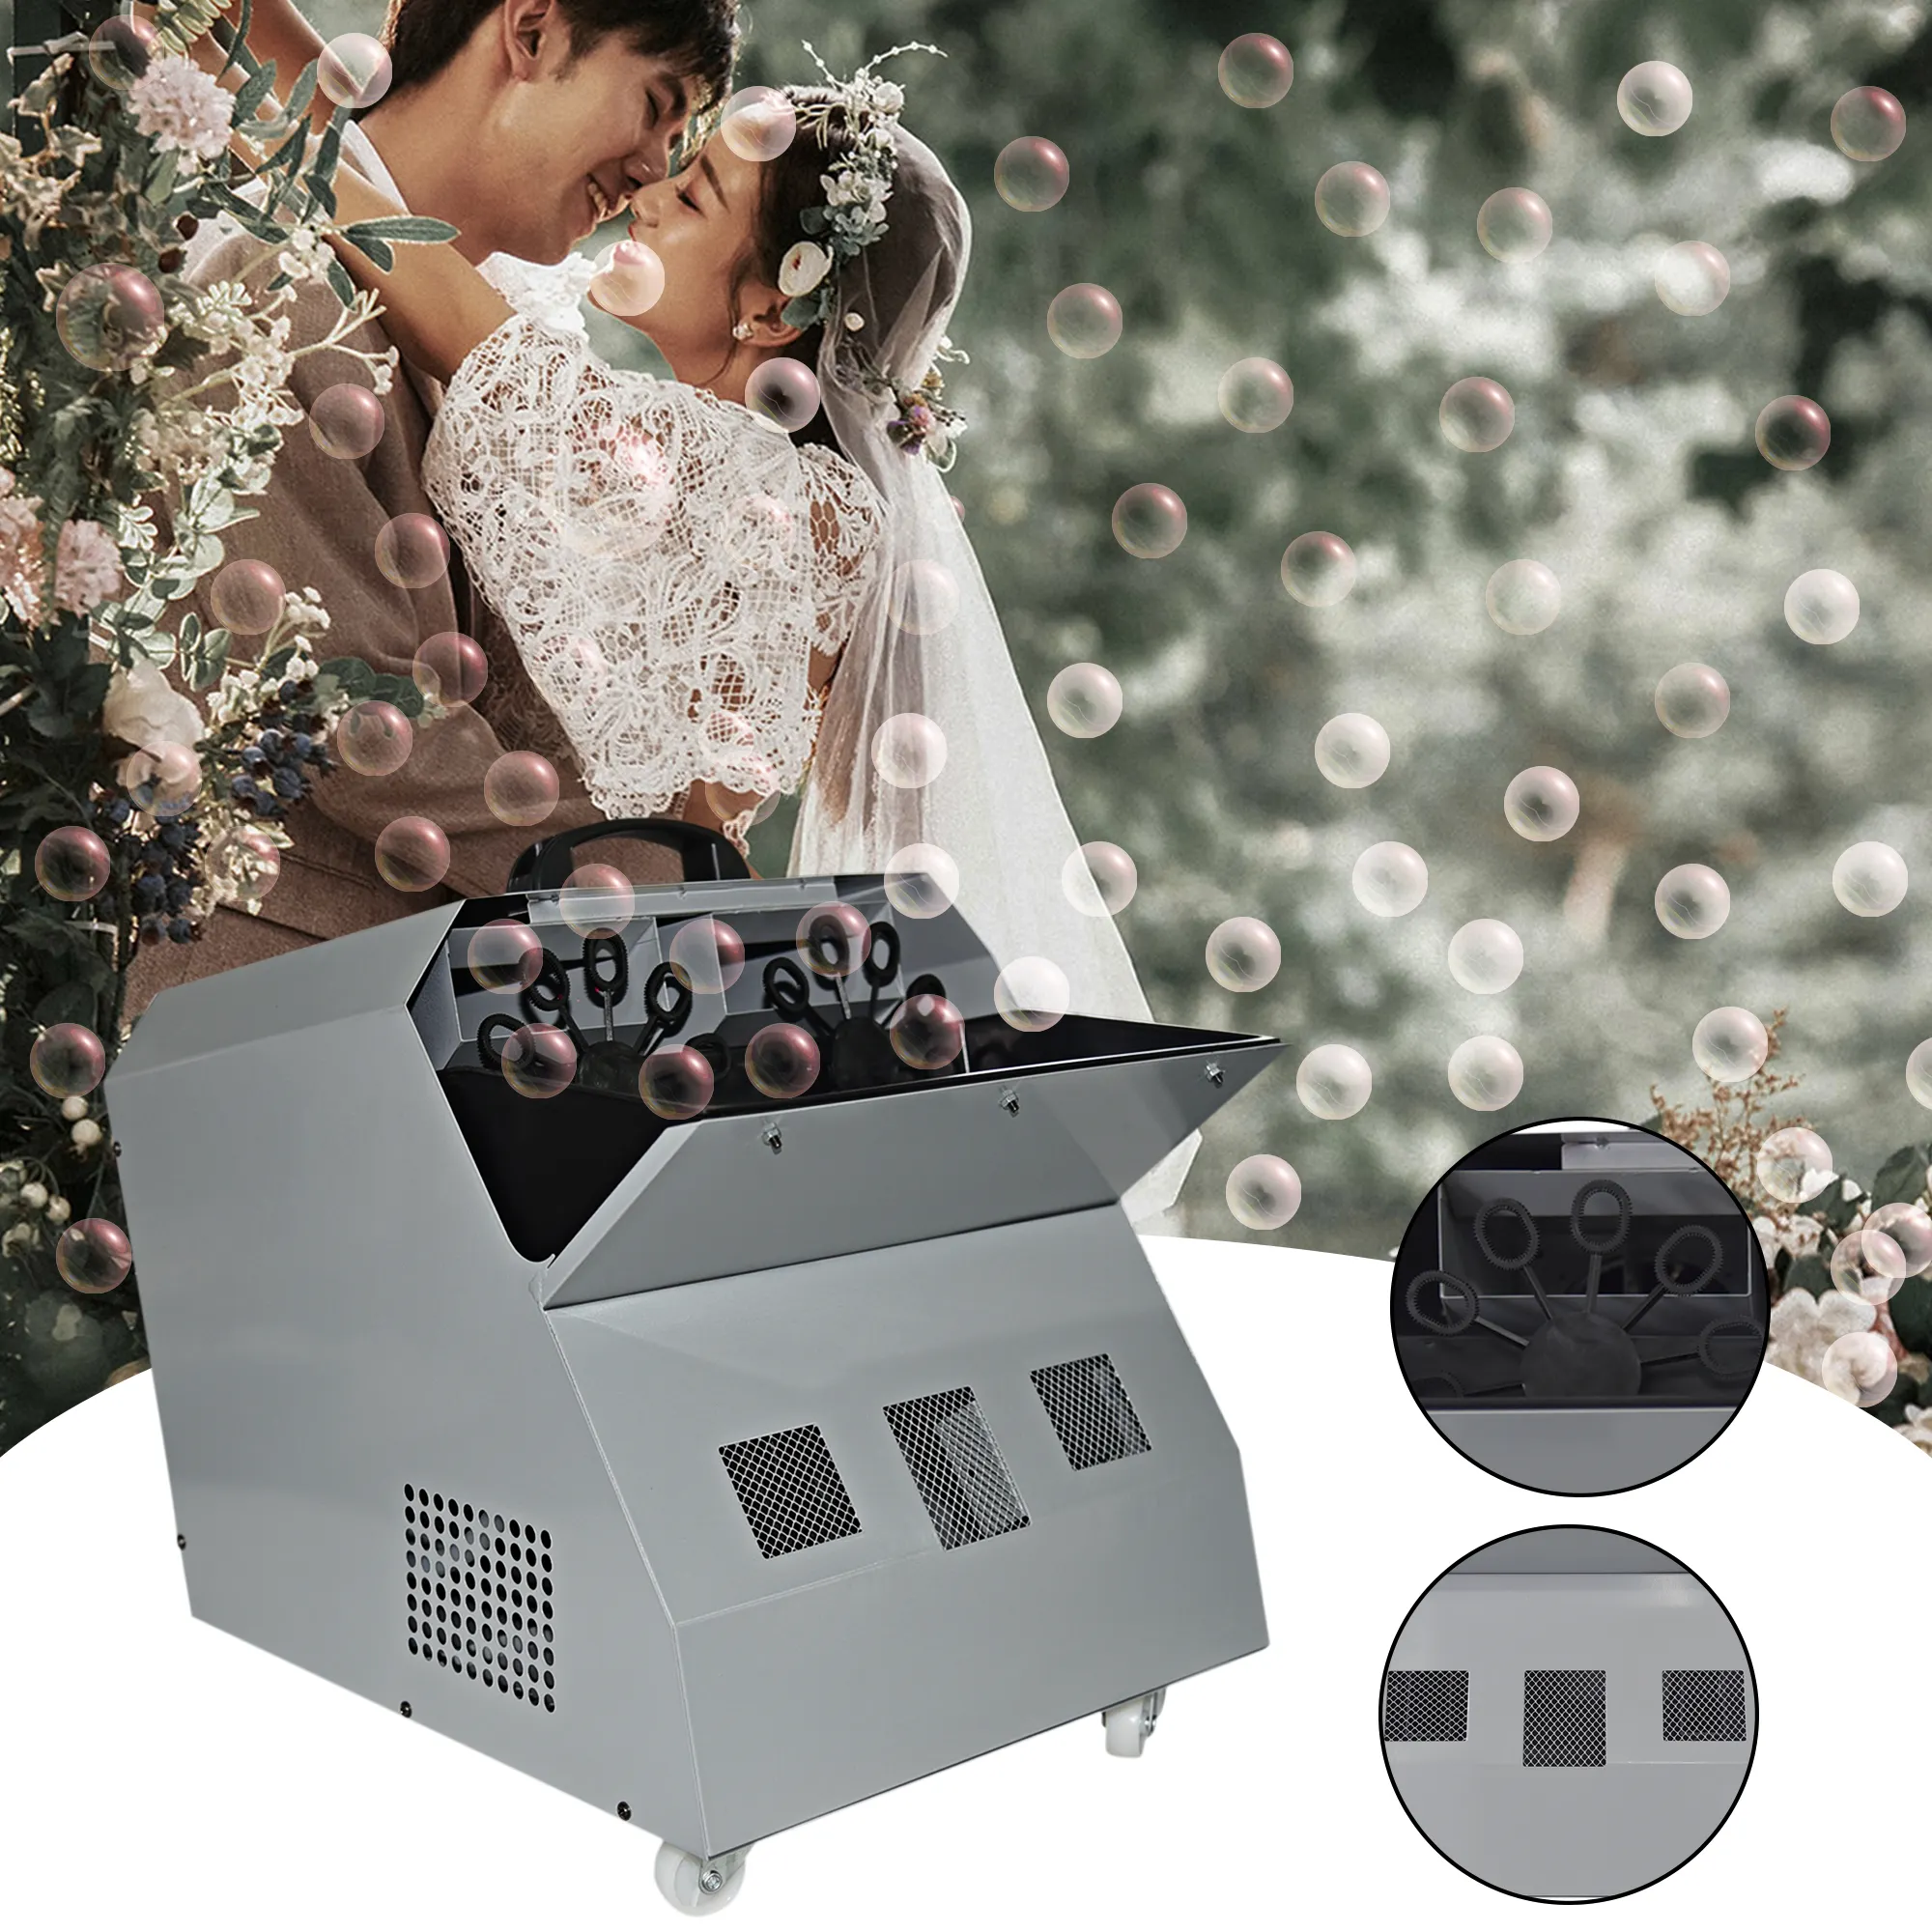 SITERUI RGB LED Dmx 512 автоматический вентилятор мыльный пузырь туман дымовая машина с беспроводным пультом дистанционного управления для сцены DJ Свадебная вечеринка Sho